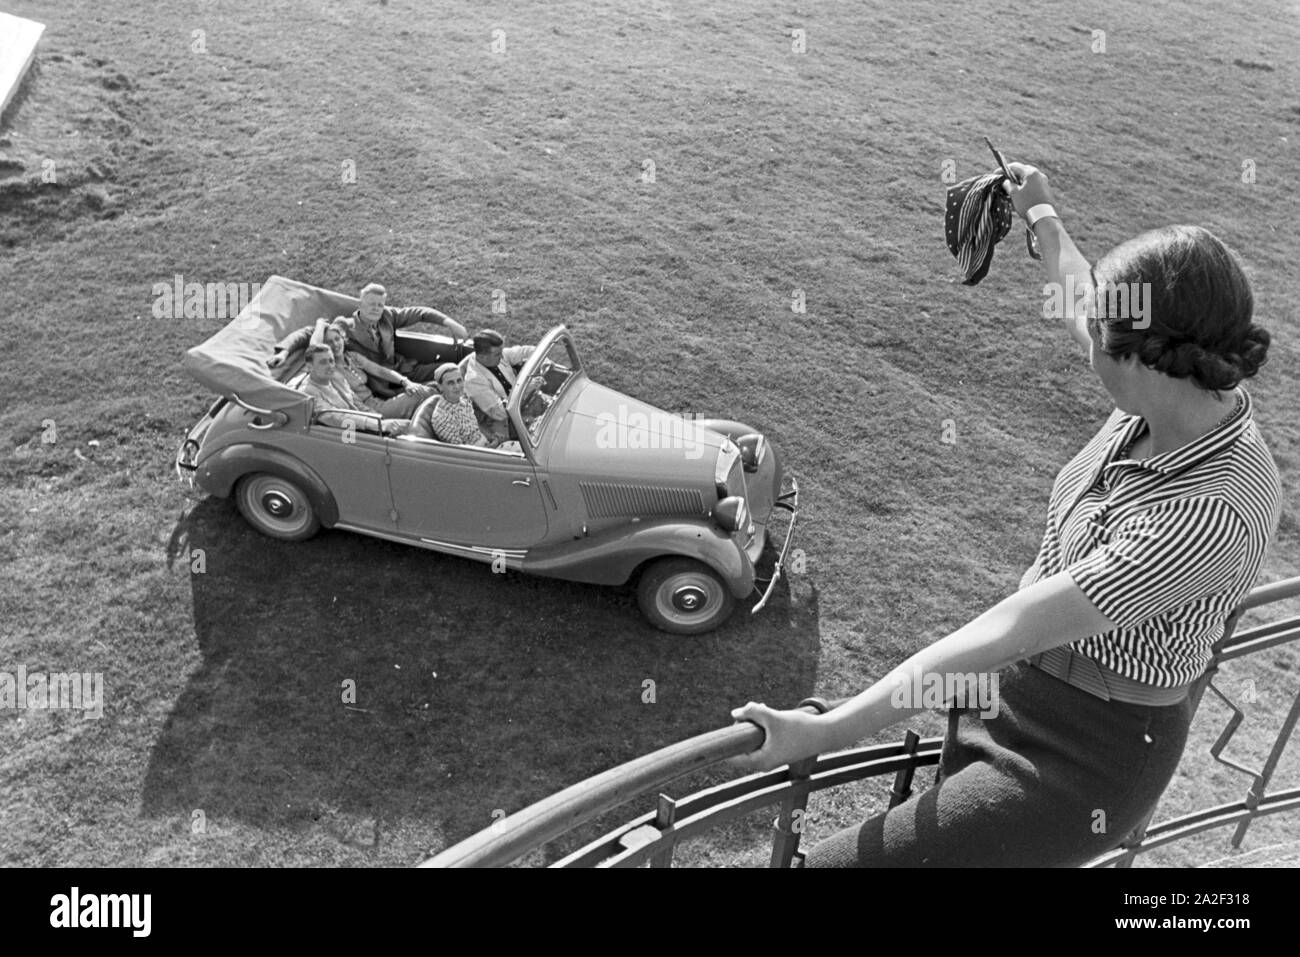 Junge leute bei einem Ausflug mit den Cabrios auf den Berg im Mittleren Schwarzwald Brend, Deutschland 1930 er Jahre. Les jeunes sur un voyage avec leur camion sur la colline de Brend la Forêt-Noire, Allemagne 1930. Banque D'Images